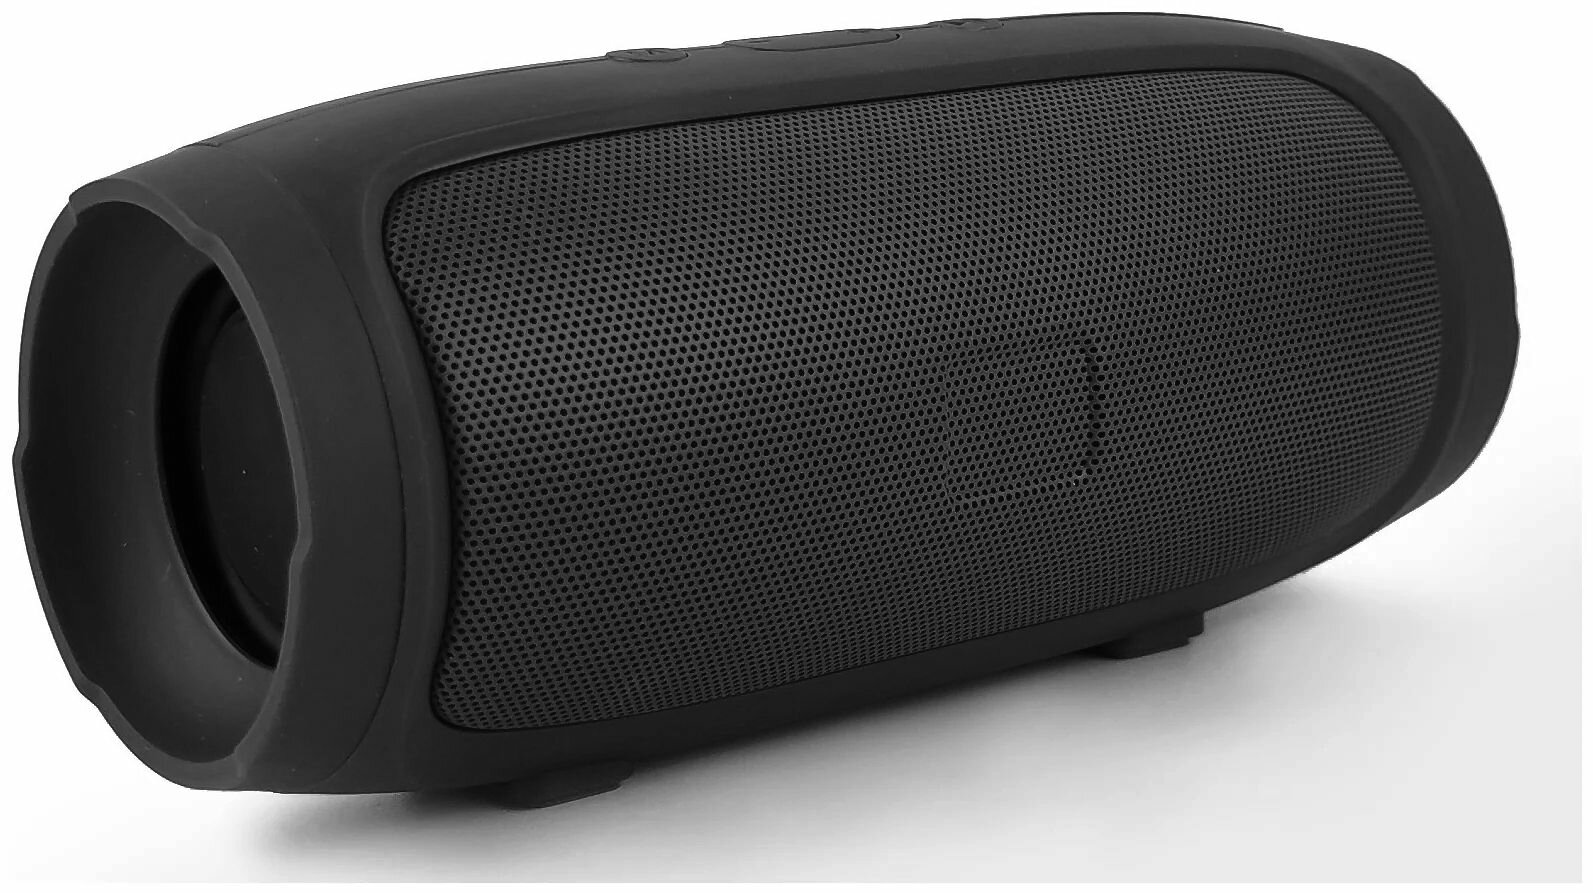 Портативная беспроводная музыкальная Bluetooth колонка G3 мини, цвет: черная, J07 Speaker, креативный мини-Музыкальный беспроводной портативный динамик